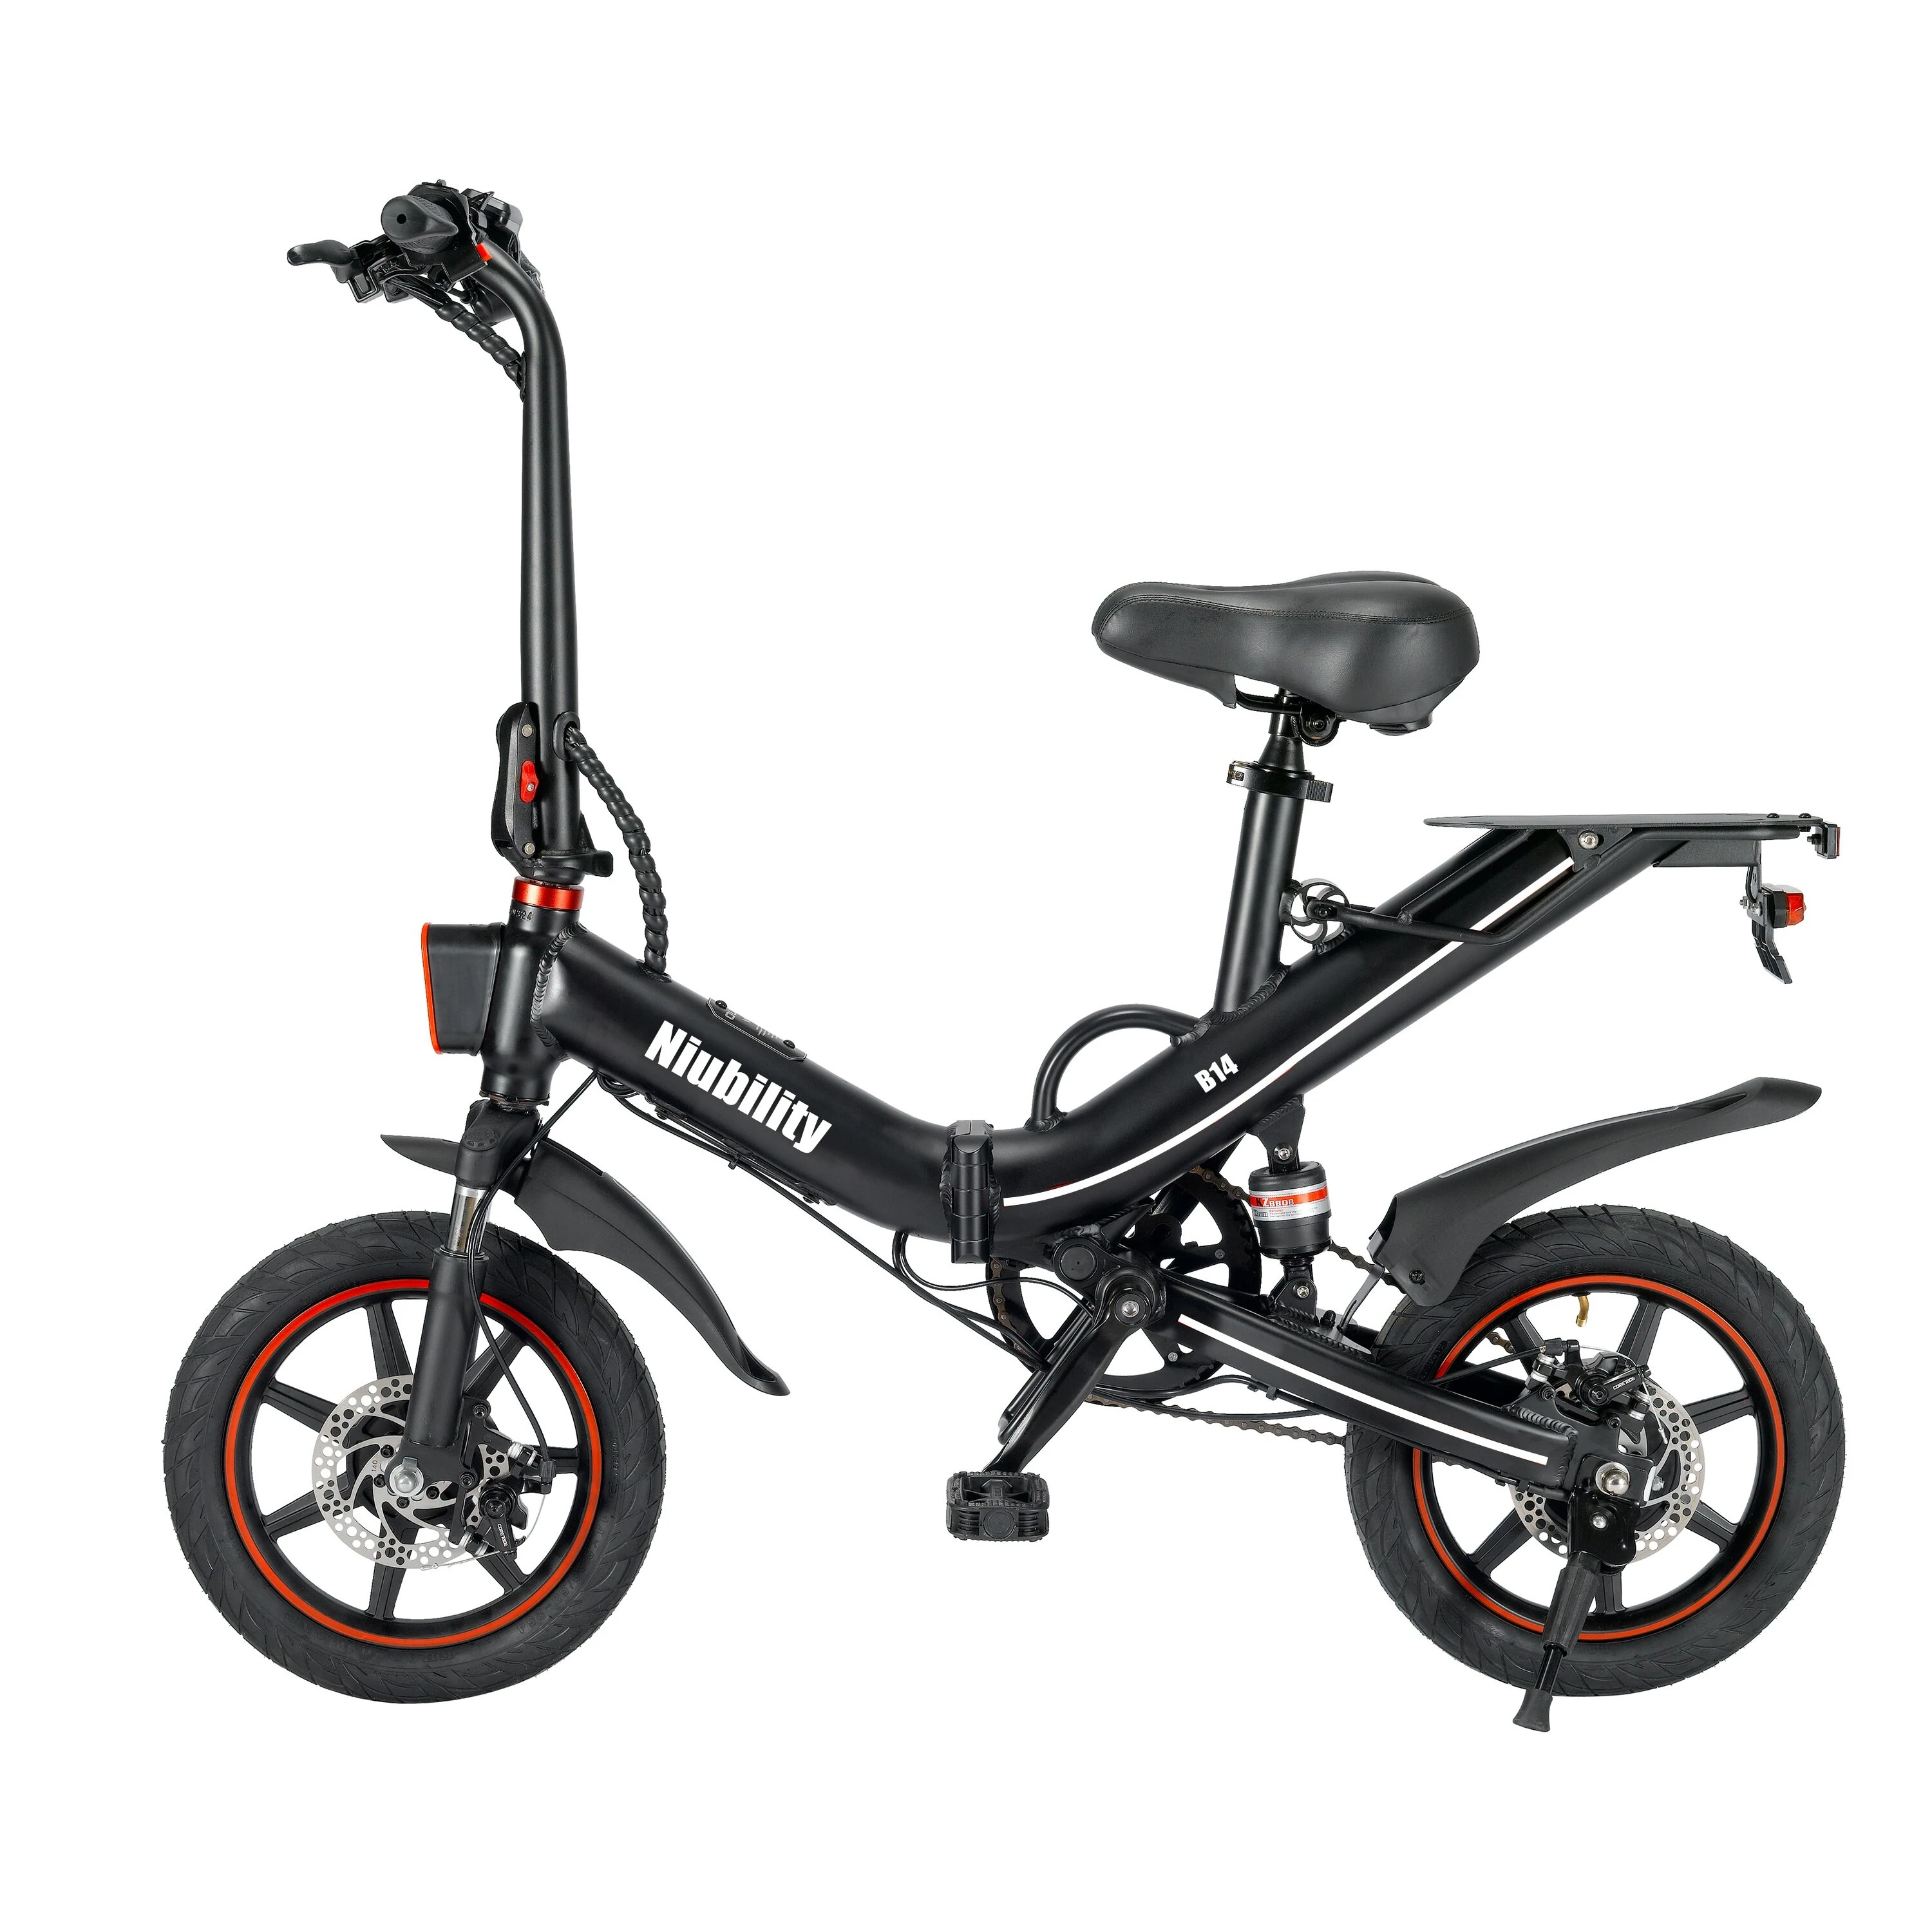 Niubility B14 – 400 watt fiets voor de prijs van een scooter